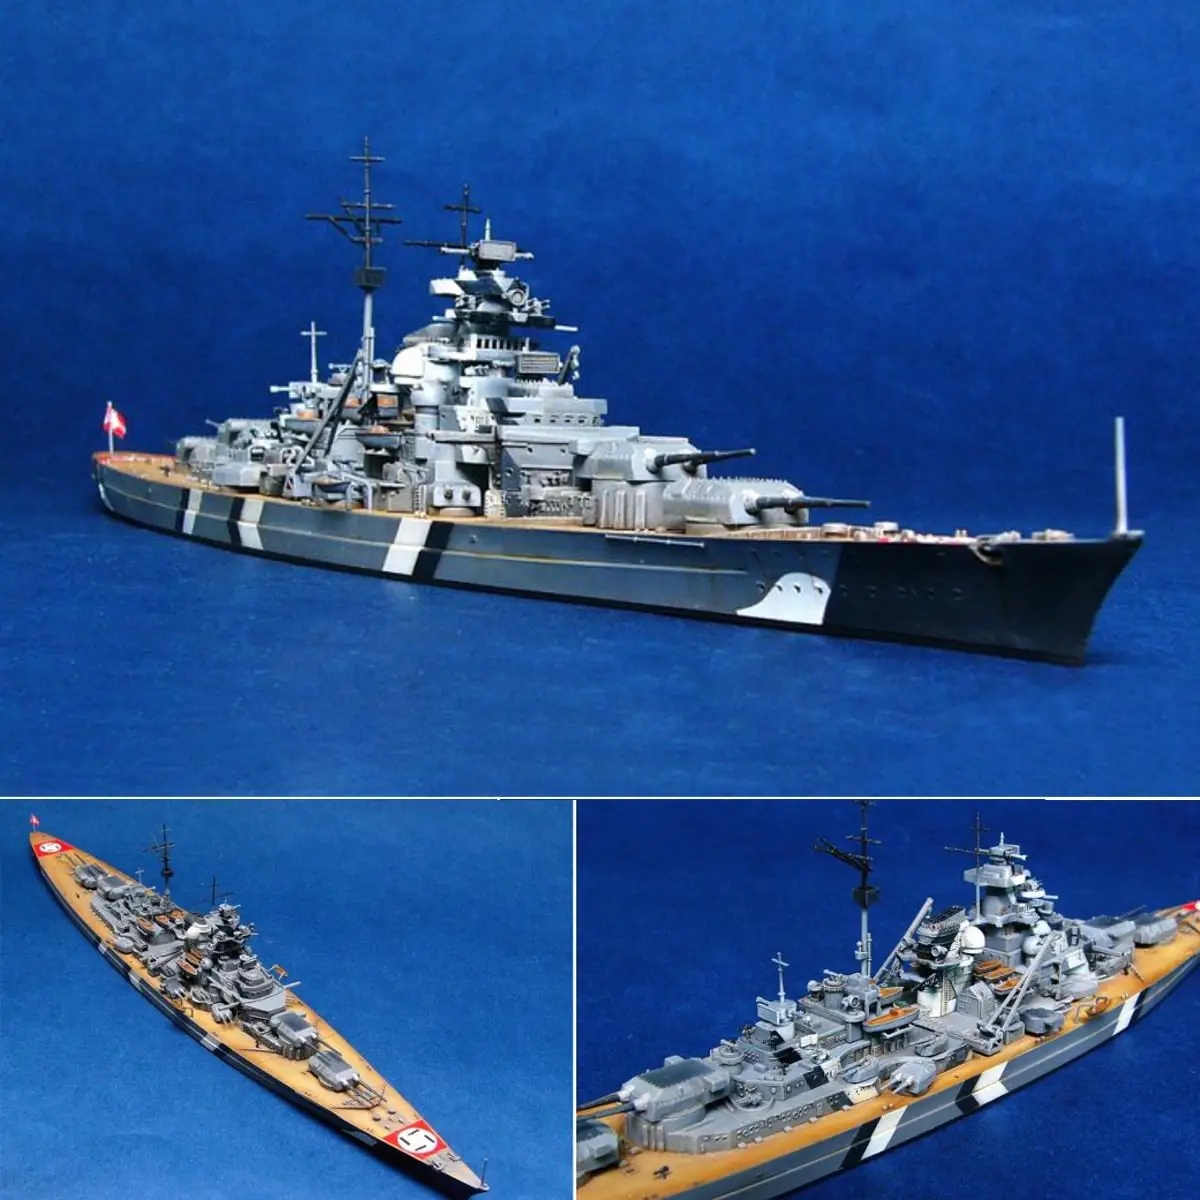 1/700 масштаб Второй мировой войны Германия морской военный корабль км Бисмарк линкор комплект модели корабля игрушка-корабль Пластик